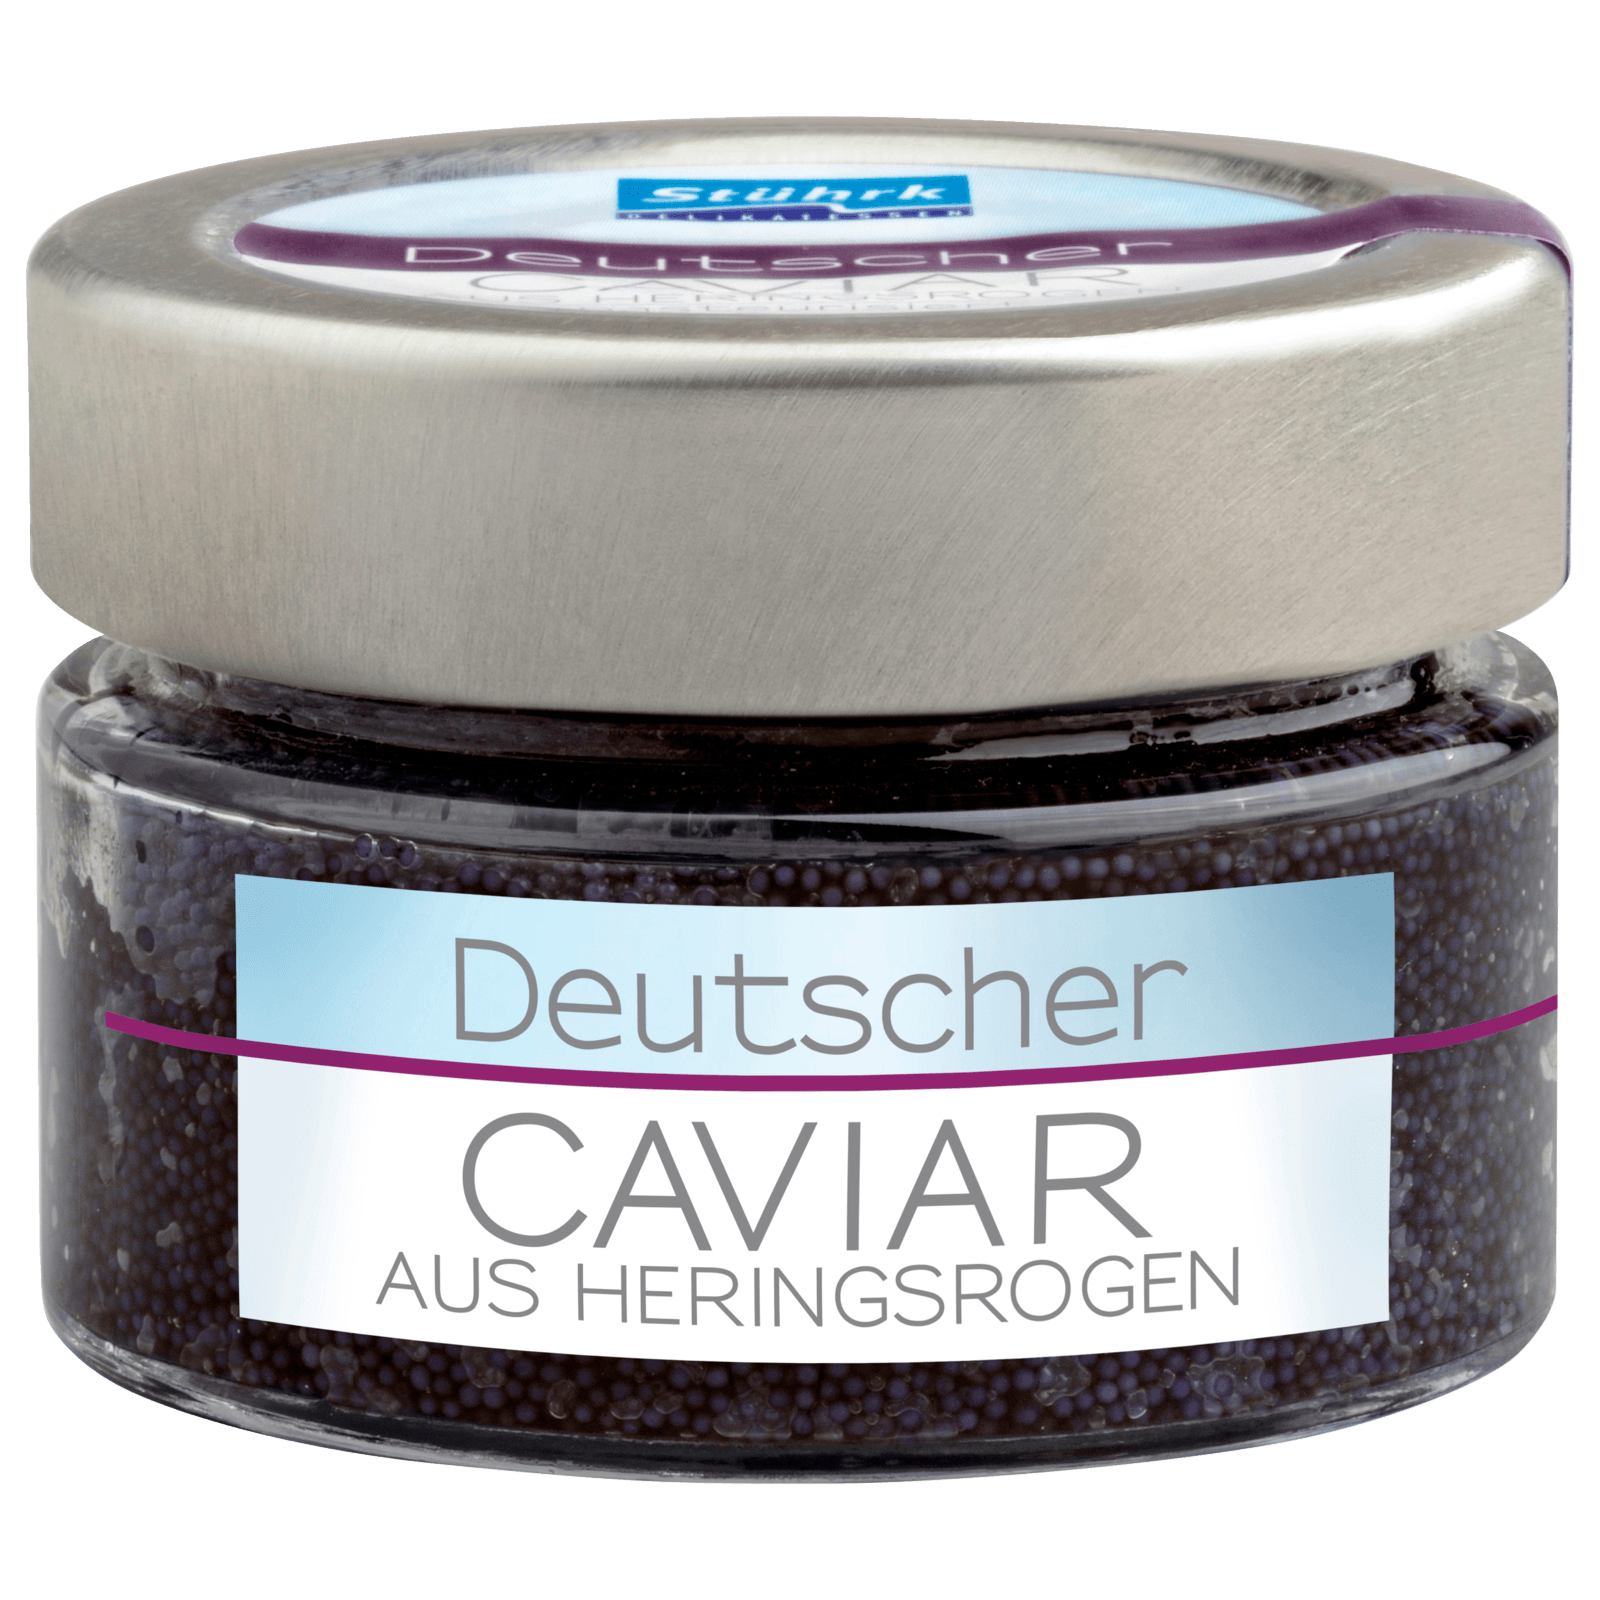 Stührk MSC Deutscher Caviar 100g  für 3.69 EUR